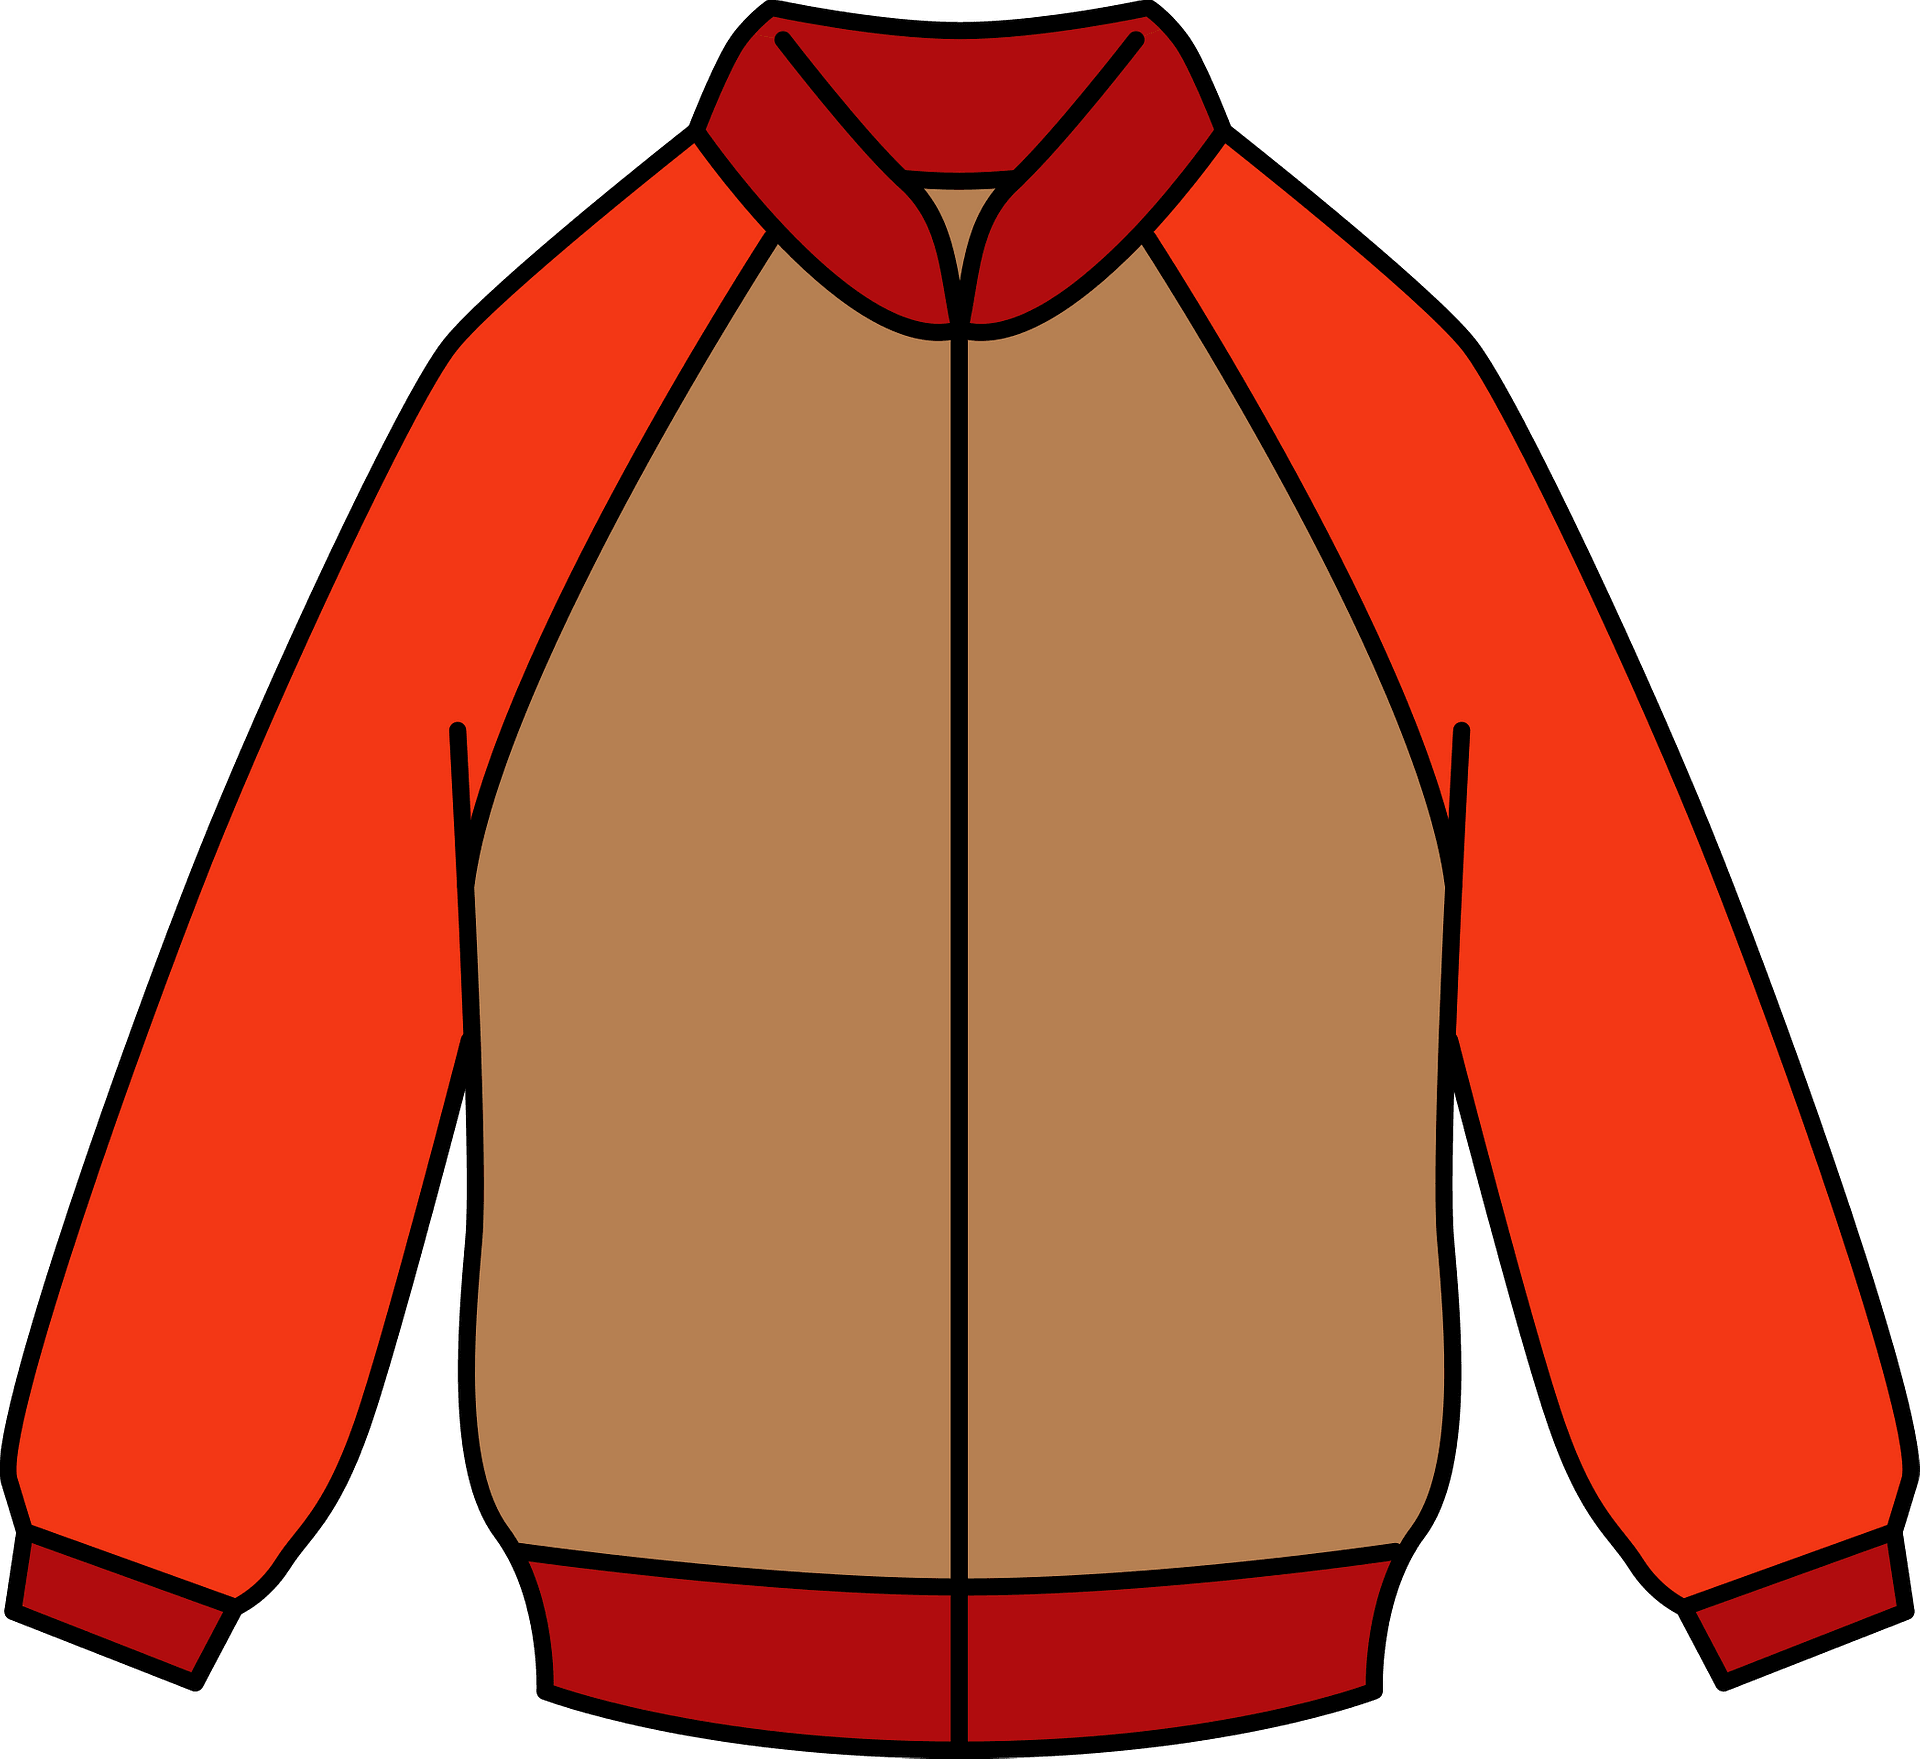 Clothes Clip PNG Image, Clothes Jacket Clip Art, Jacket Clipart - Clip ...